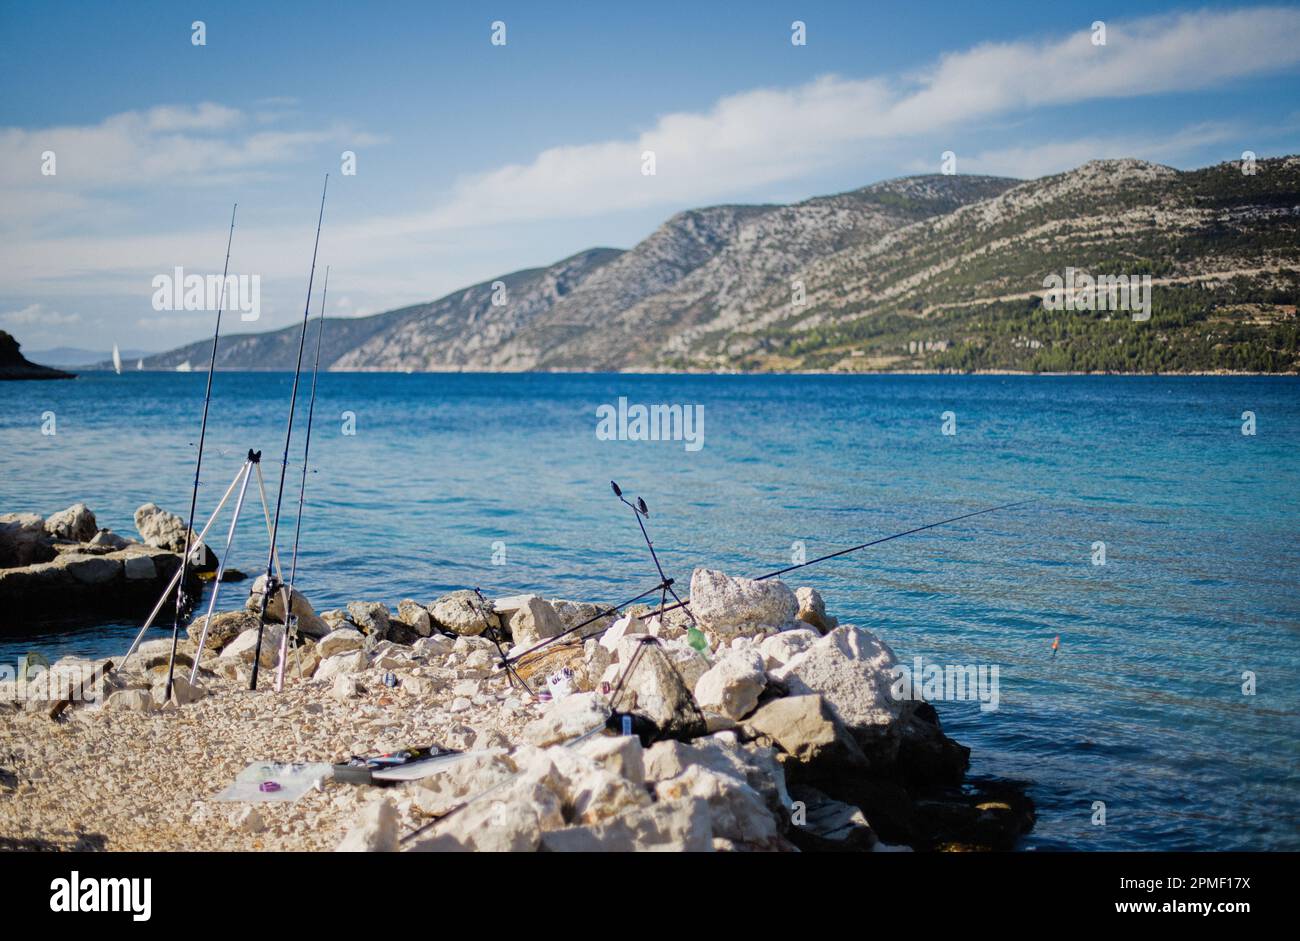 Canne da pesca nel Mare Adriatico sull'isola di Korcula nel sud della Croazia. Foto Stock